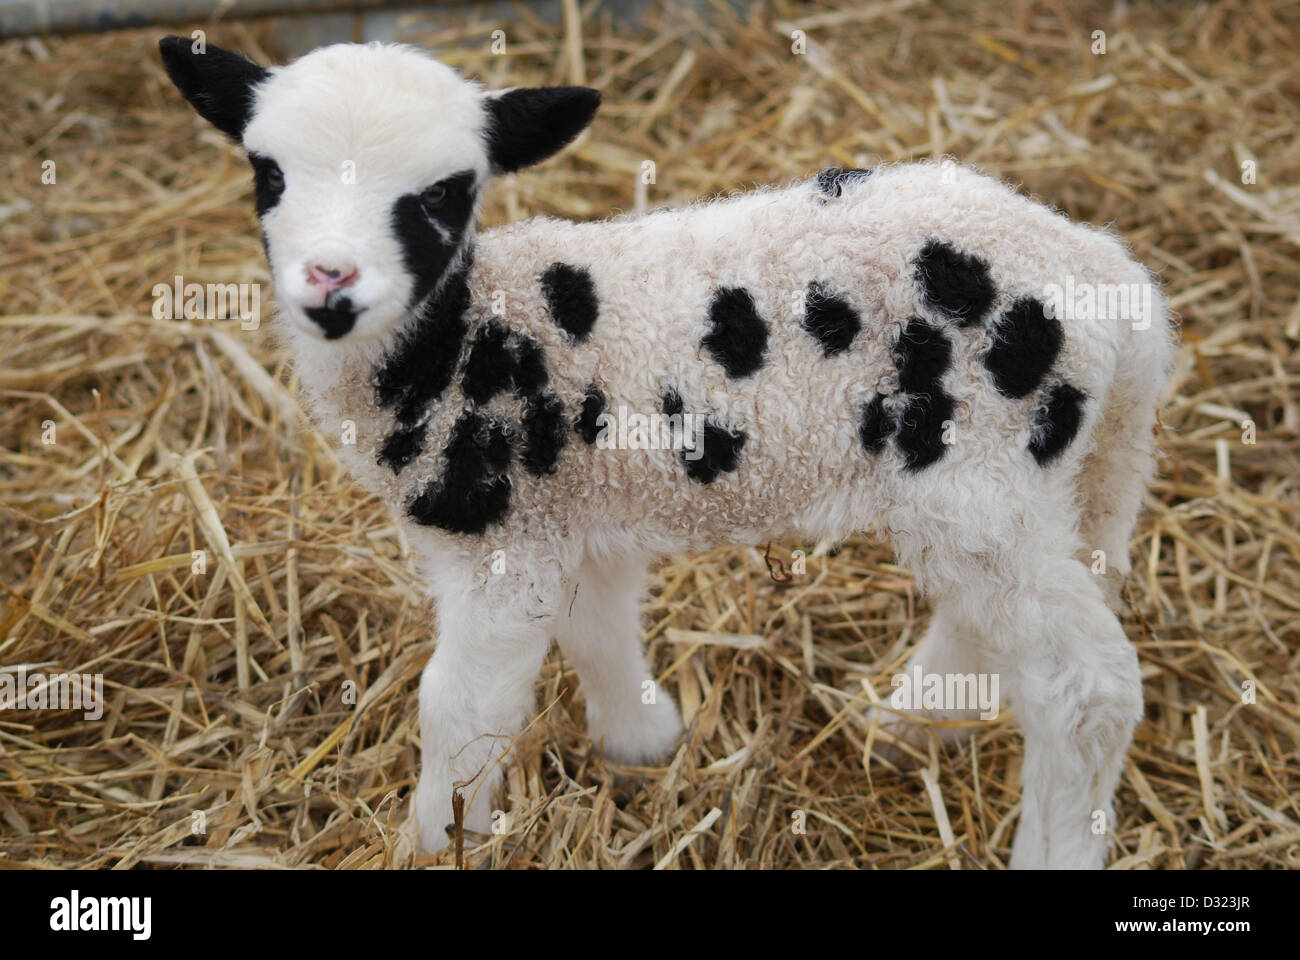 Un agneau nouveau-né sur une ferme pédagogique et une ferme à un stylo de foin frais ou de paille, près de son visage noir et blanc Banque D'Images